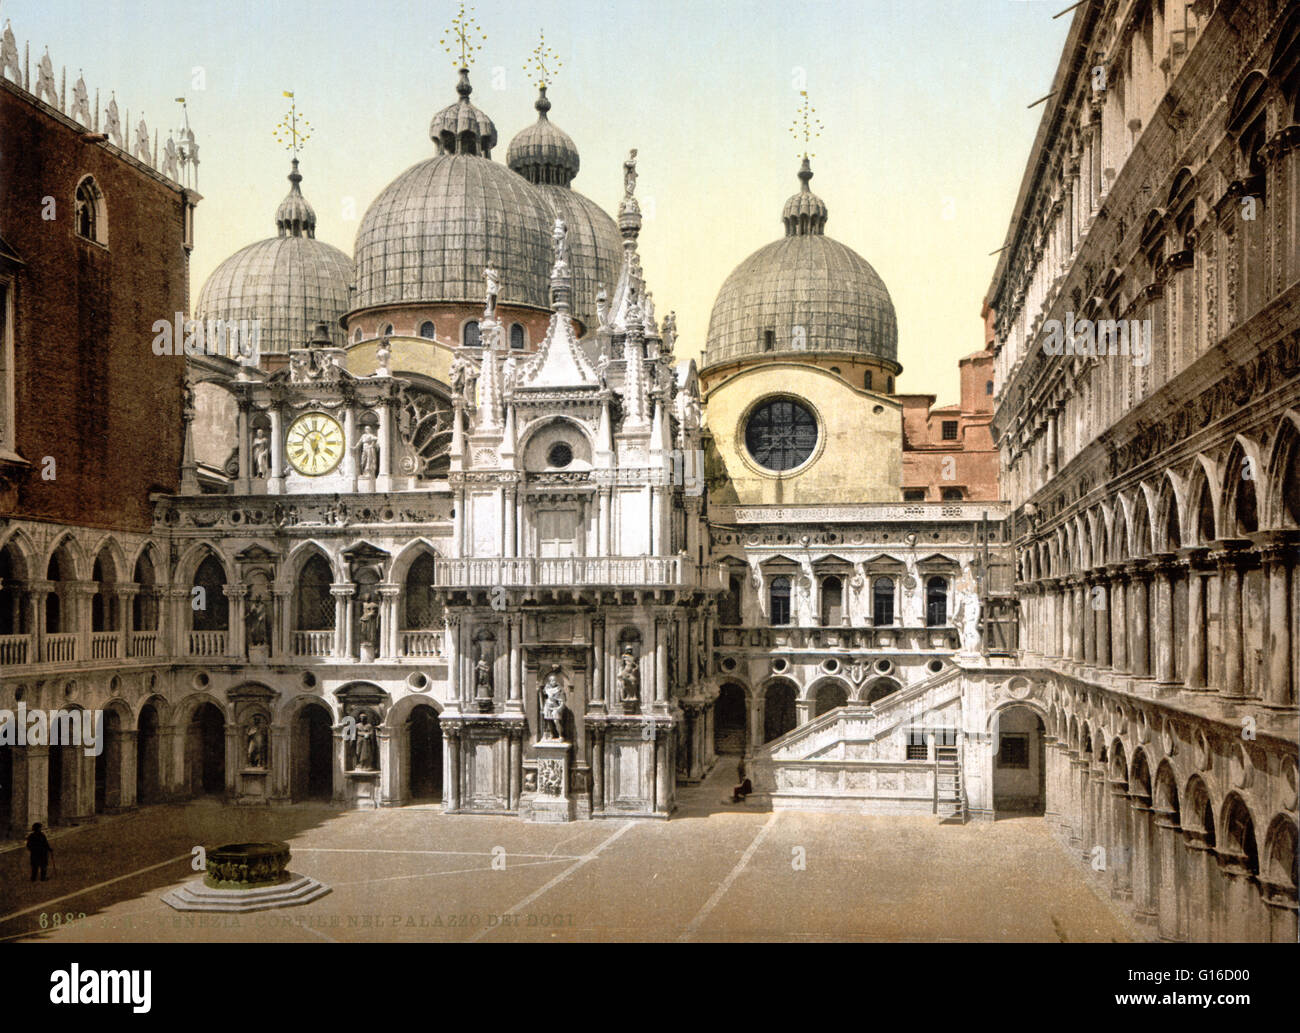 Il Palazzo Ducale è un palazzo costruito in stile gotico veneziano, e uno dei principali monumenti della città di Venezia. La parte più antica del palazzo è la facciata Affacciato sulla laguna, i cui angoli sono decorate con trecento sculture di Filip Foto Stock